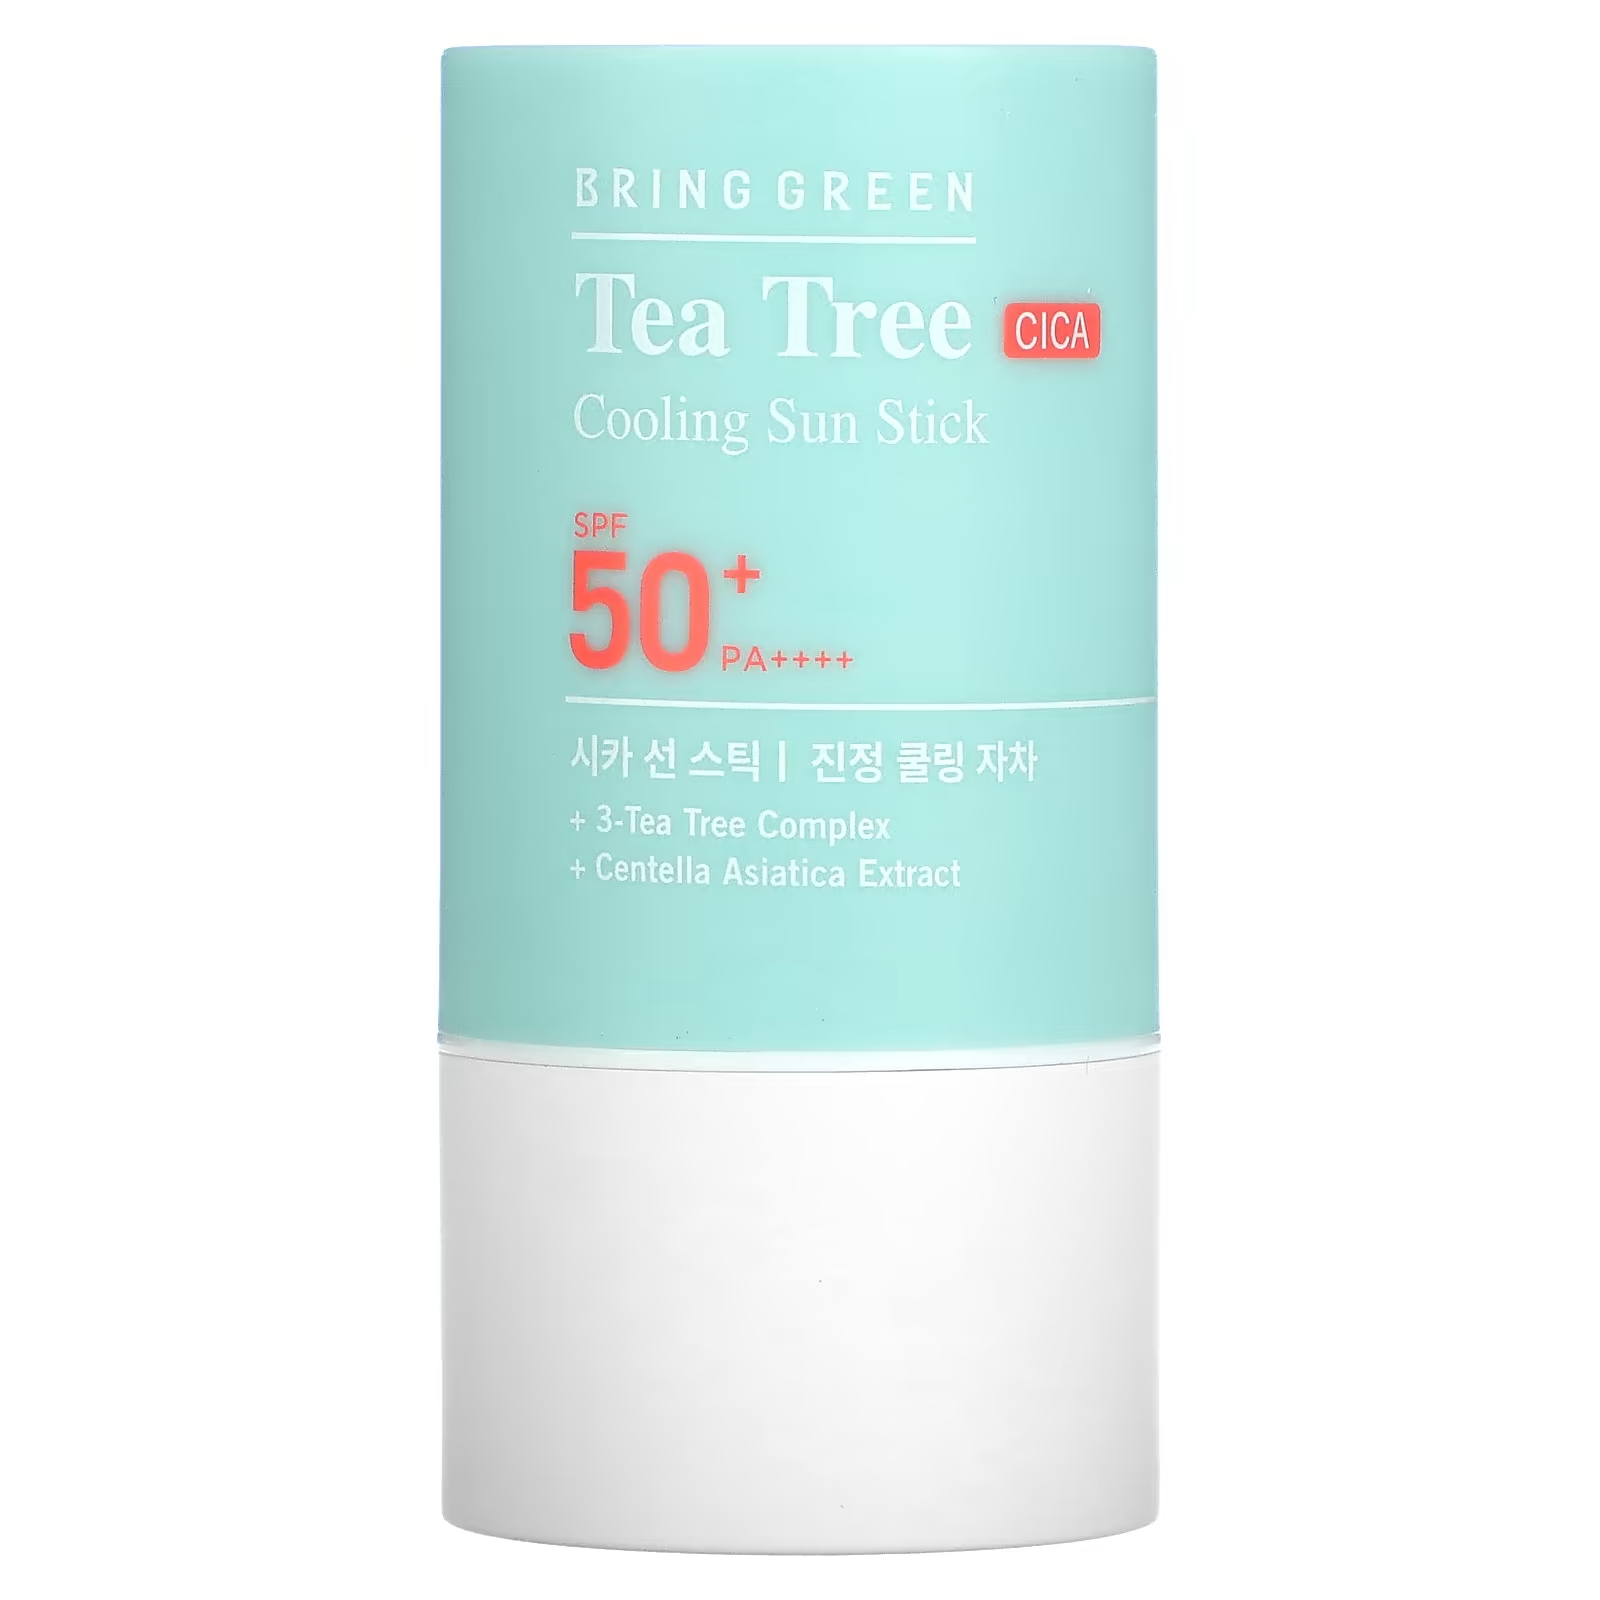 Солнцезащитный стик Bringgreen Tea Tree CICA SPF 50+ PA++++ охлаждающий, 22 г